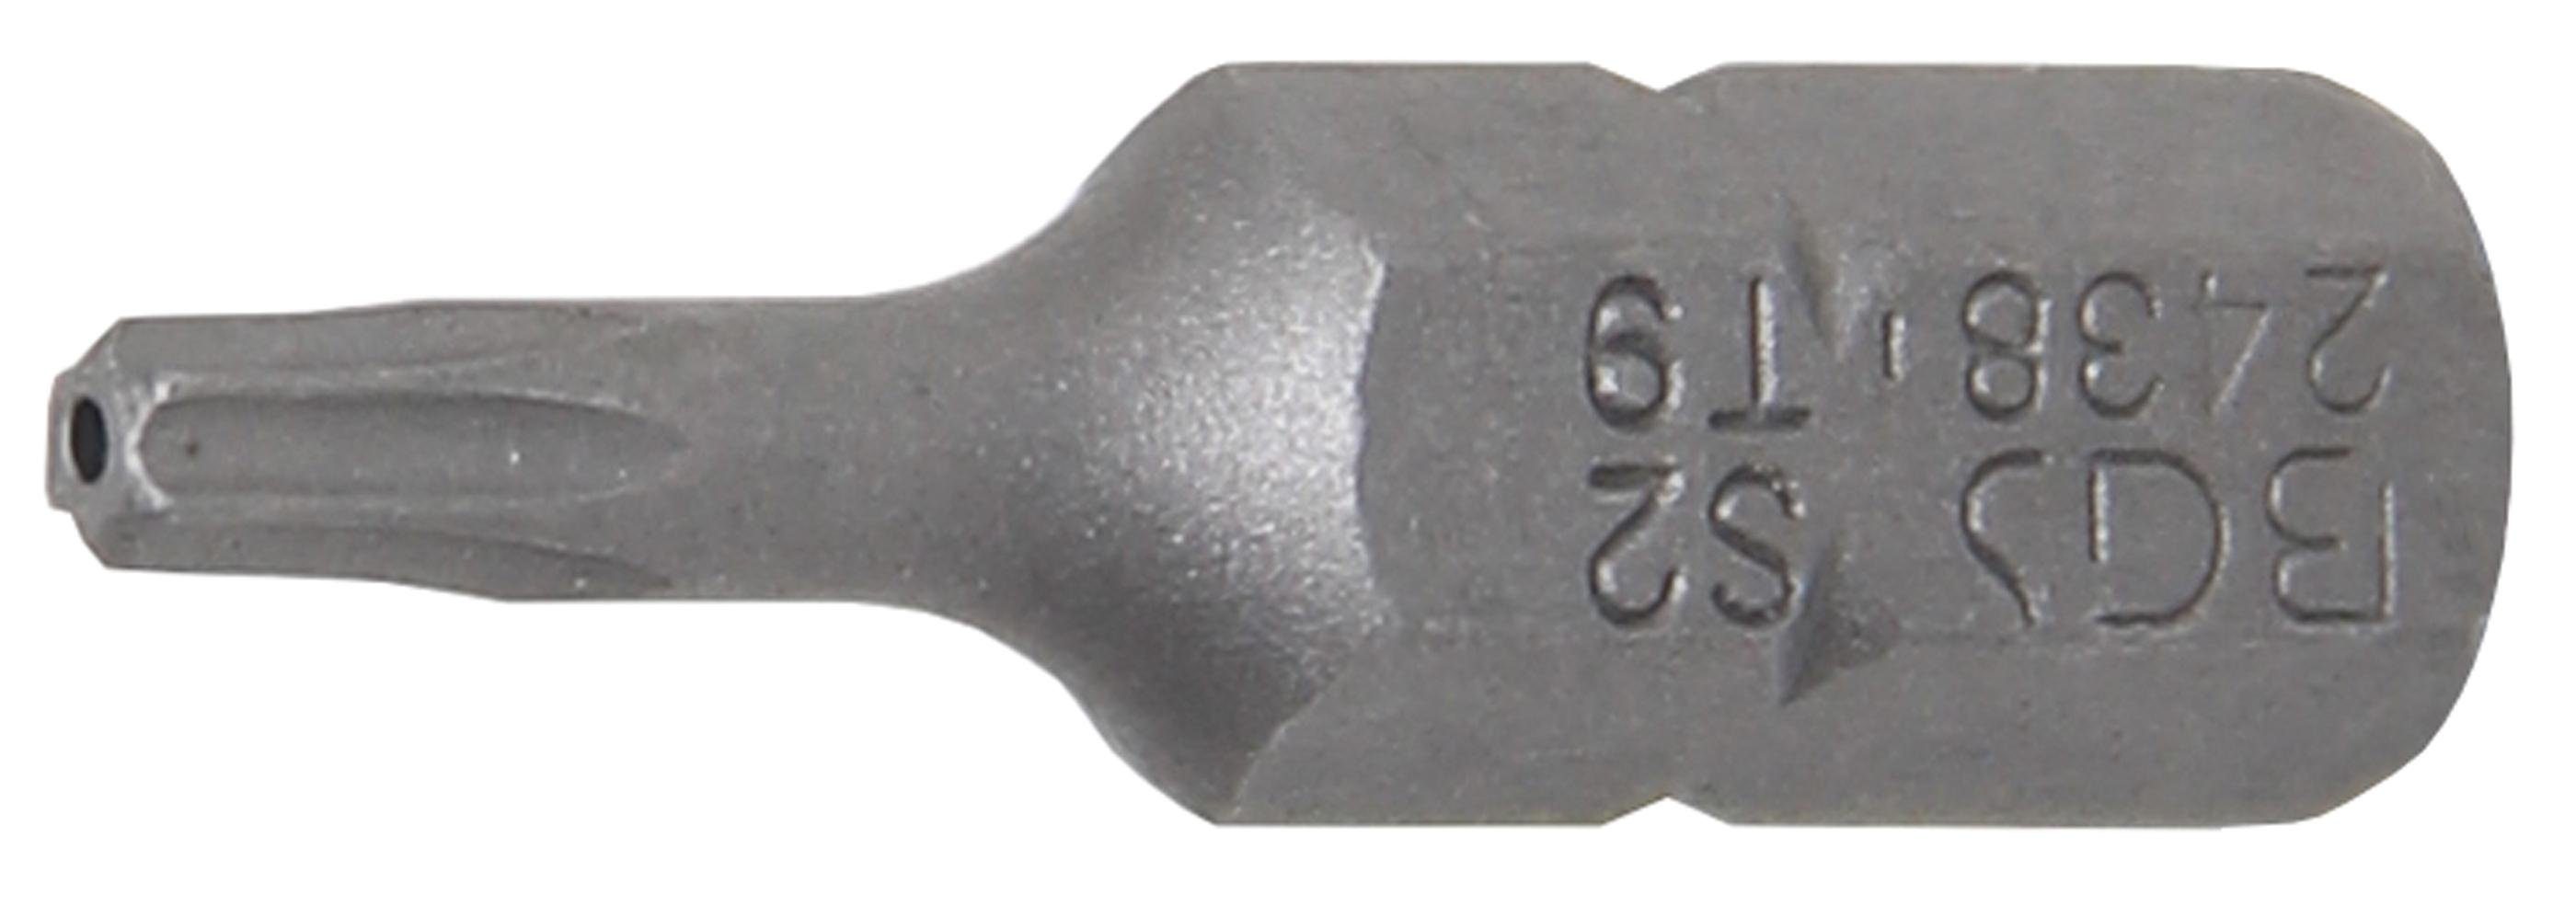 BGS technic Bit-Schraubendreher 6,3 Torx) Antrieb mm T-Profil Bit, T9 (1/4), Bohrung Außensechskant (für mit